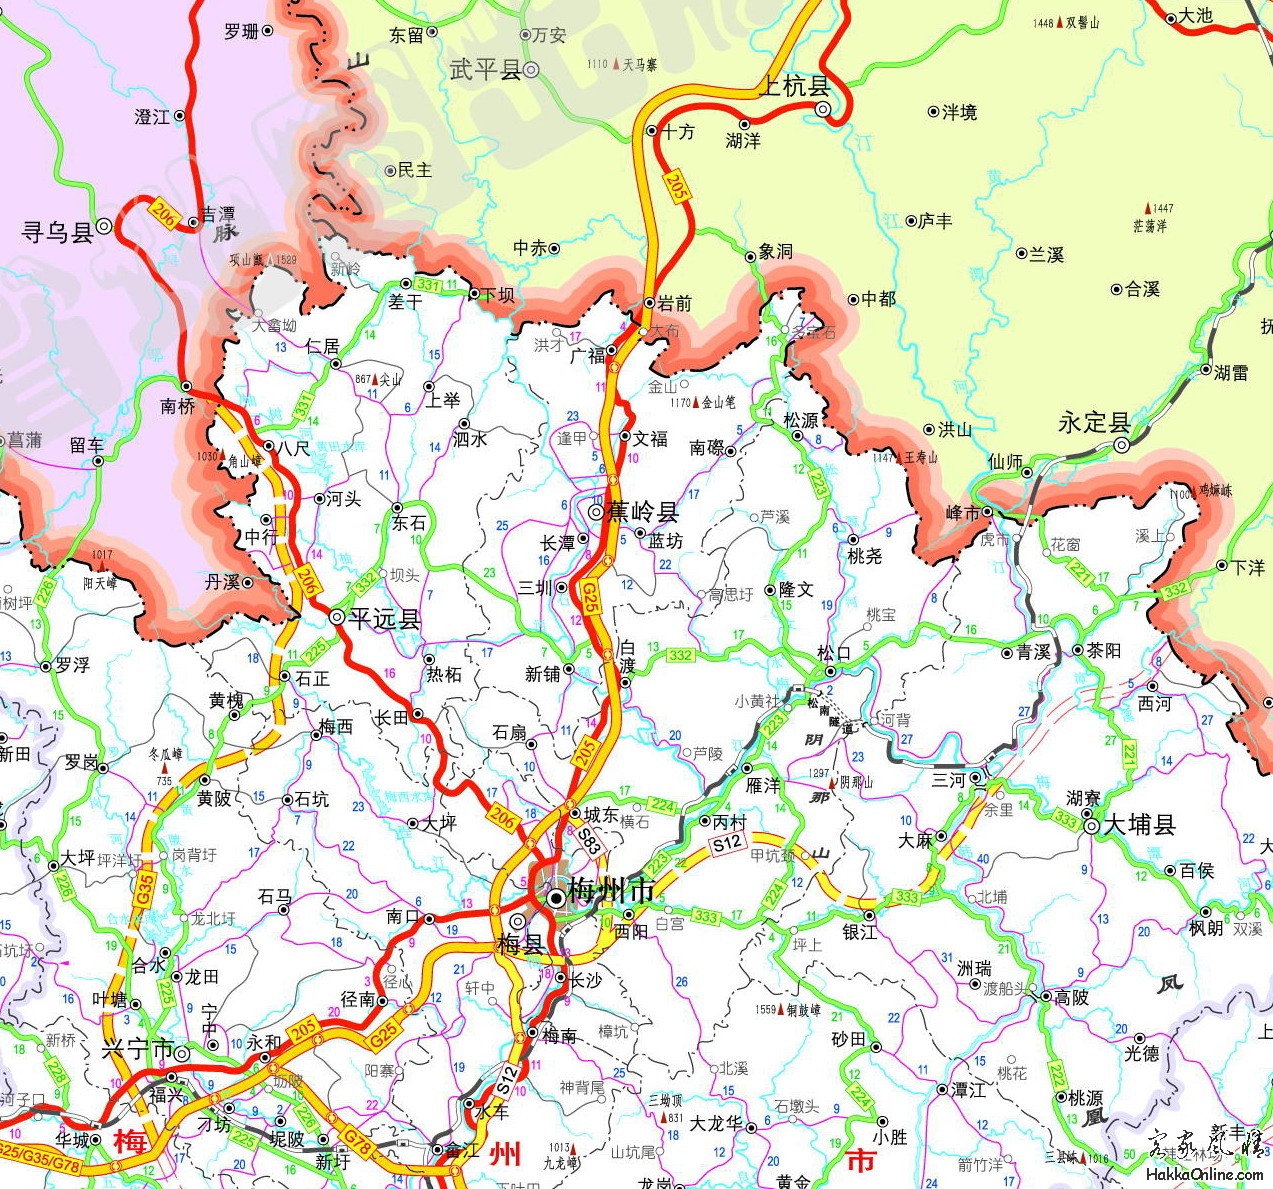 梅州市至闽西 梅州市至赣南的高速公路分别是G25 G35 S12（2009年11月）.jpg.jpg